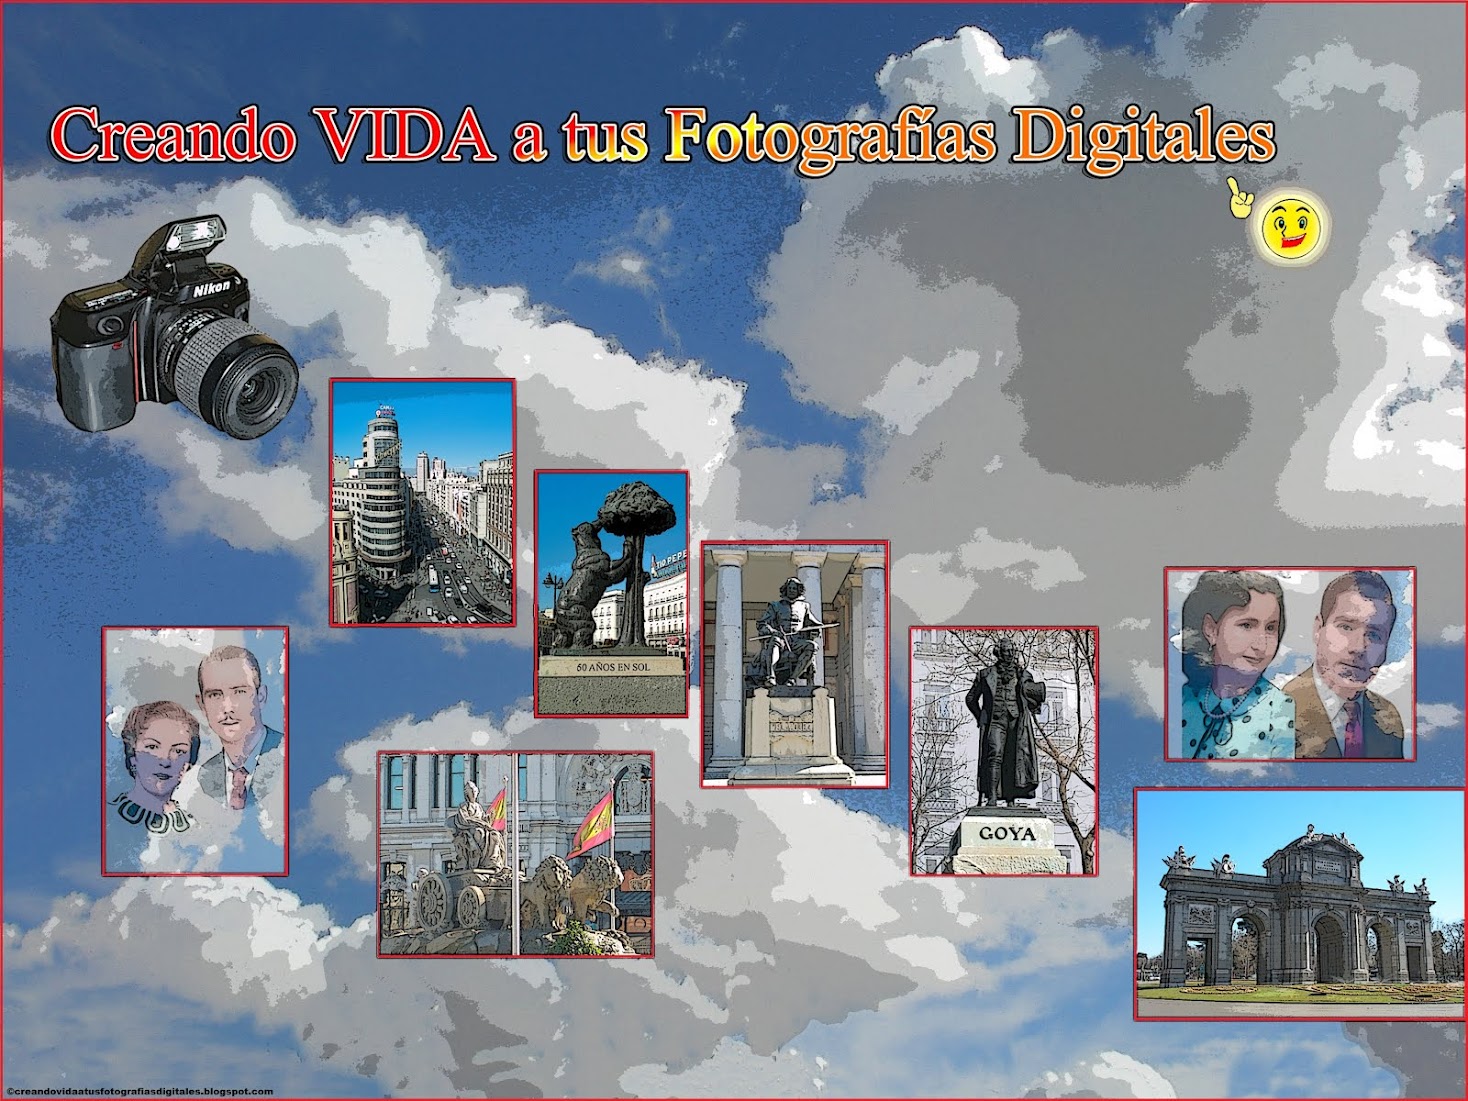 Creando VIDA a tus Fotografías Digitales